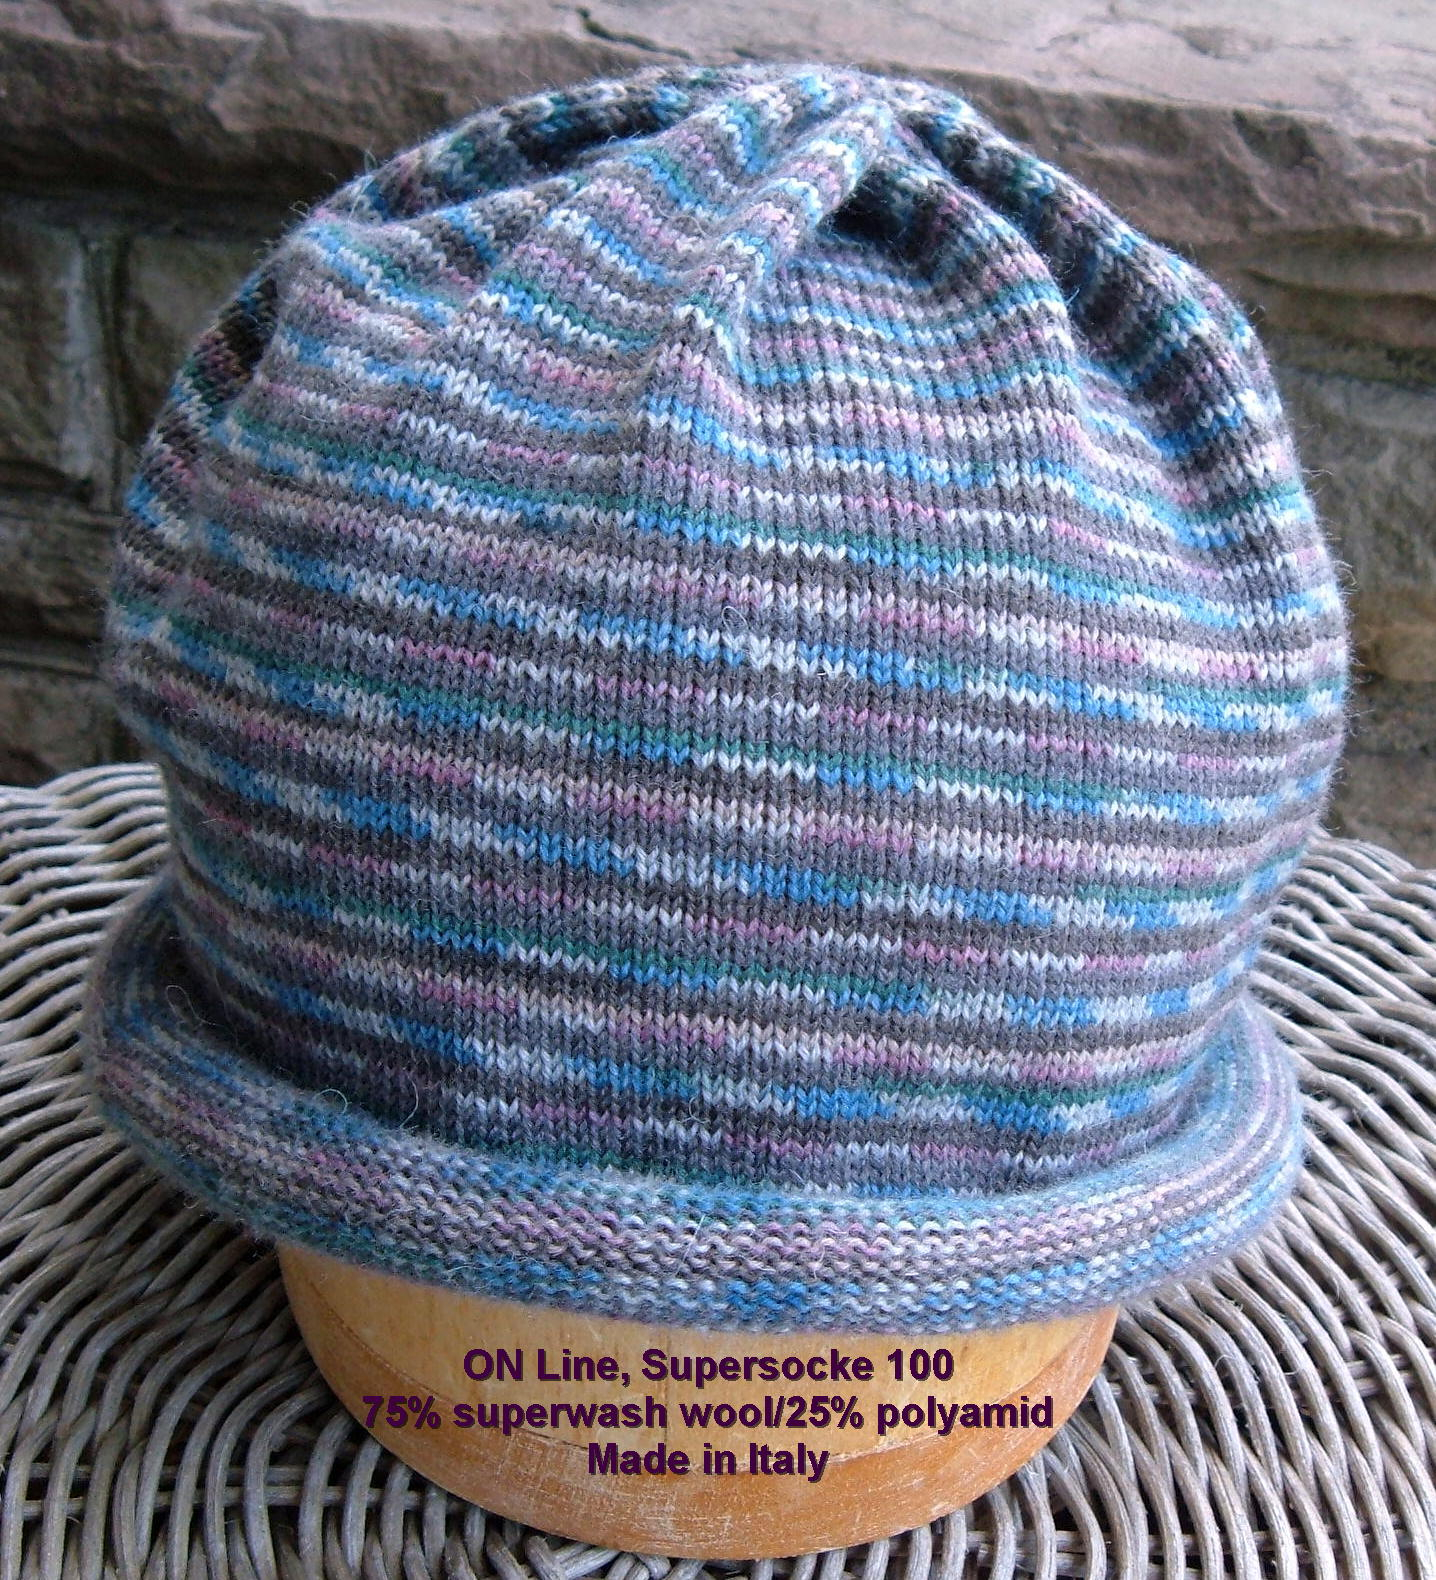 Passap Knitting Machine Patterns Free Pattern Sock Yarn Circular Hat On Passap Knitting Machine